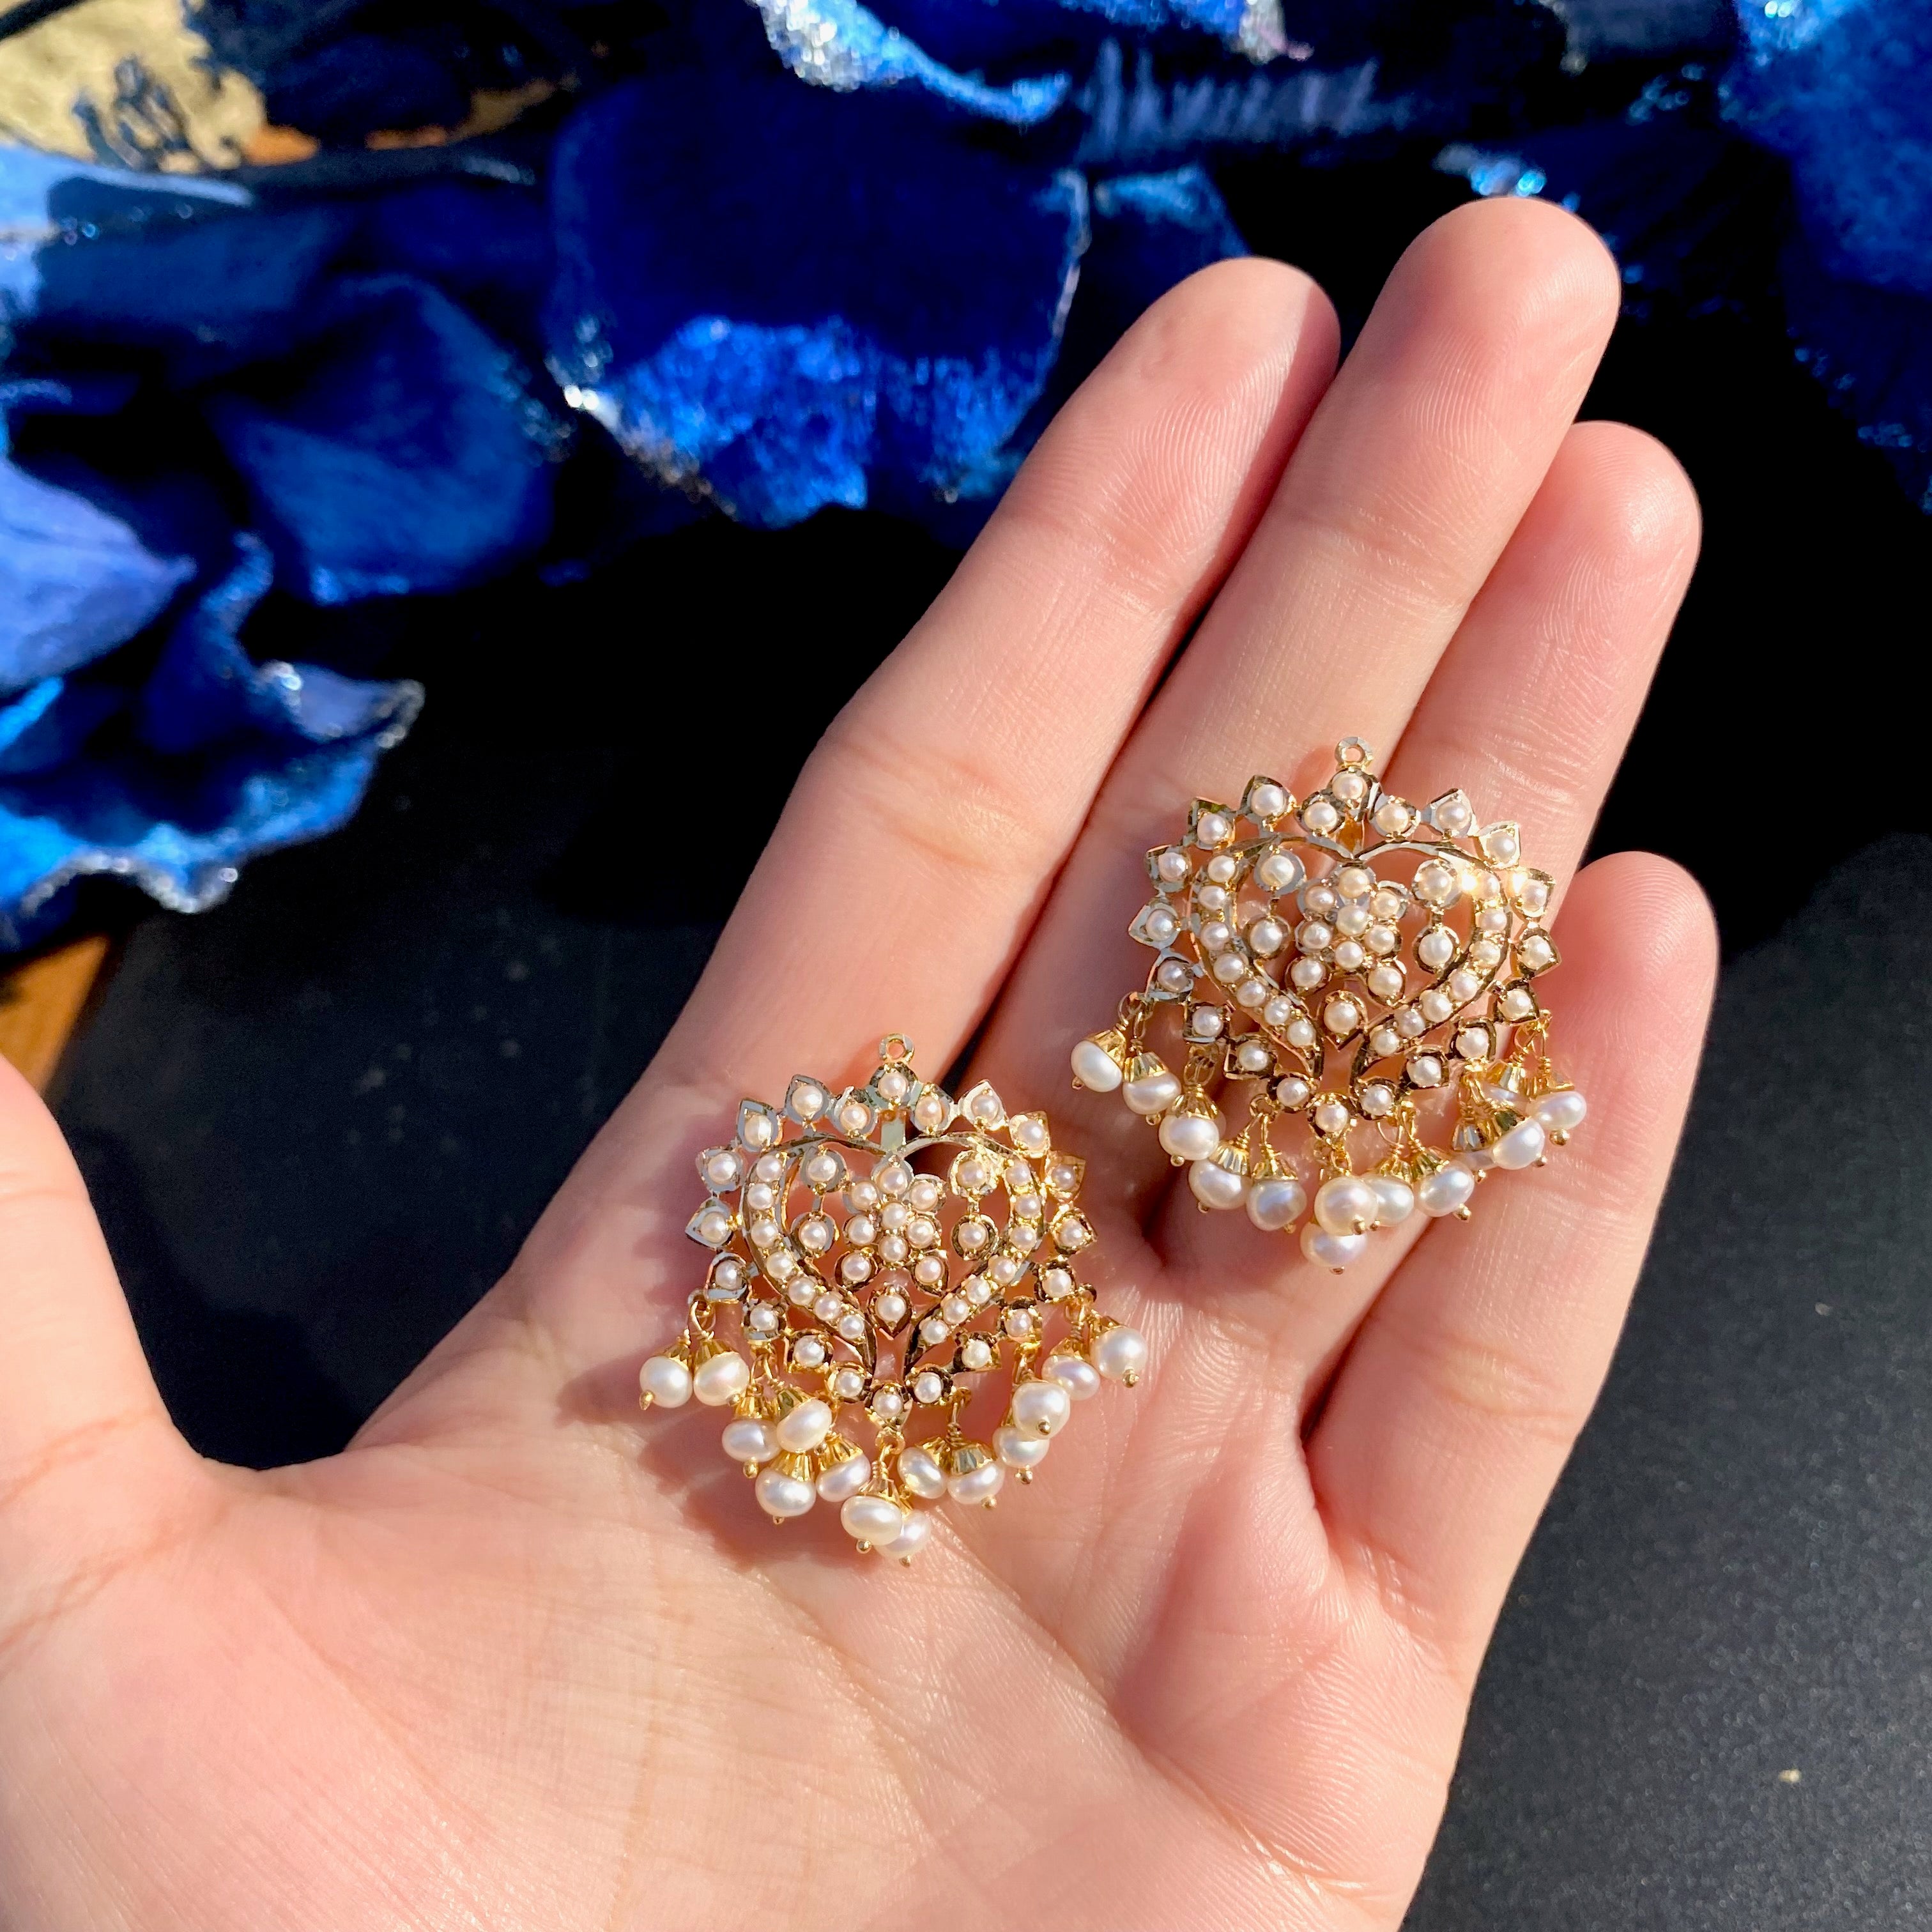 pearl earrings in gold